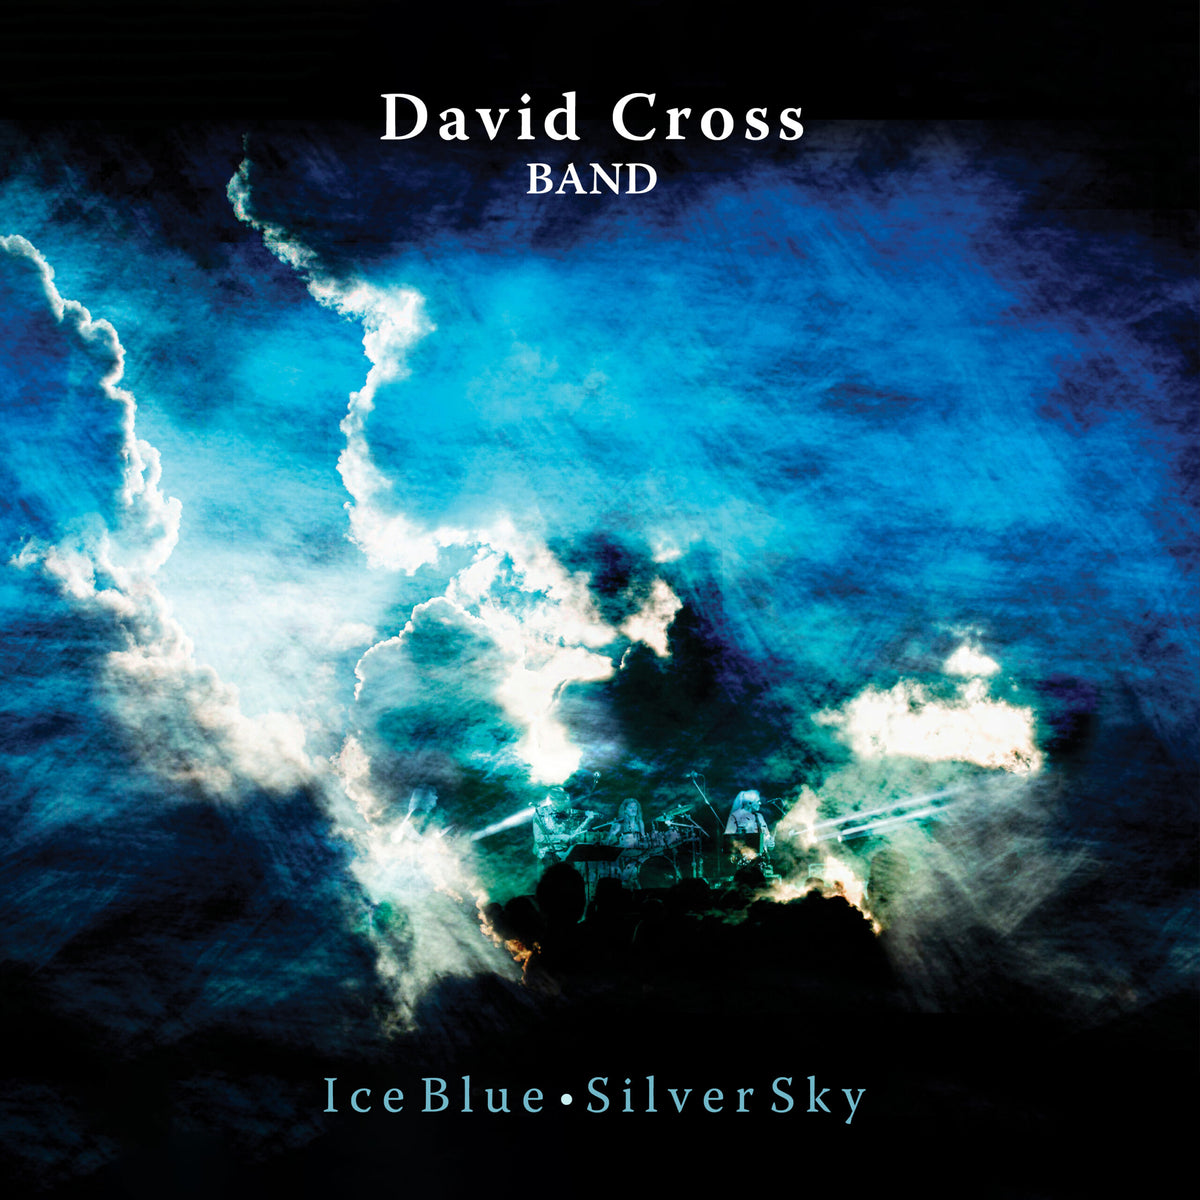 David Cross Band - Ice Blue, Silver Sky - NOISY012